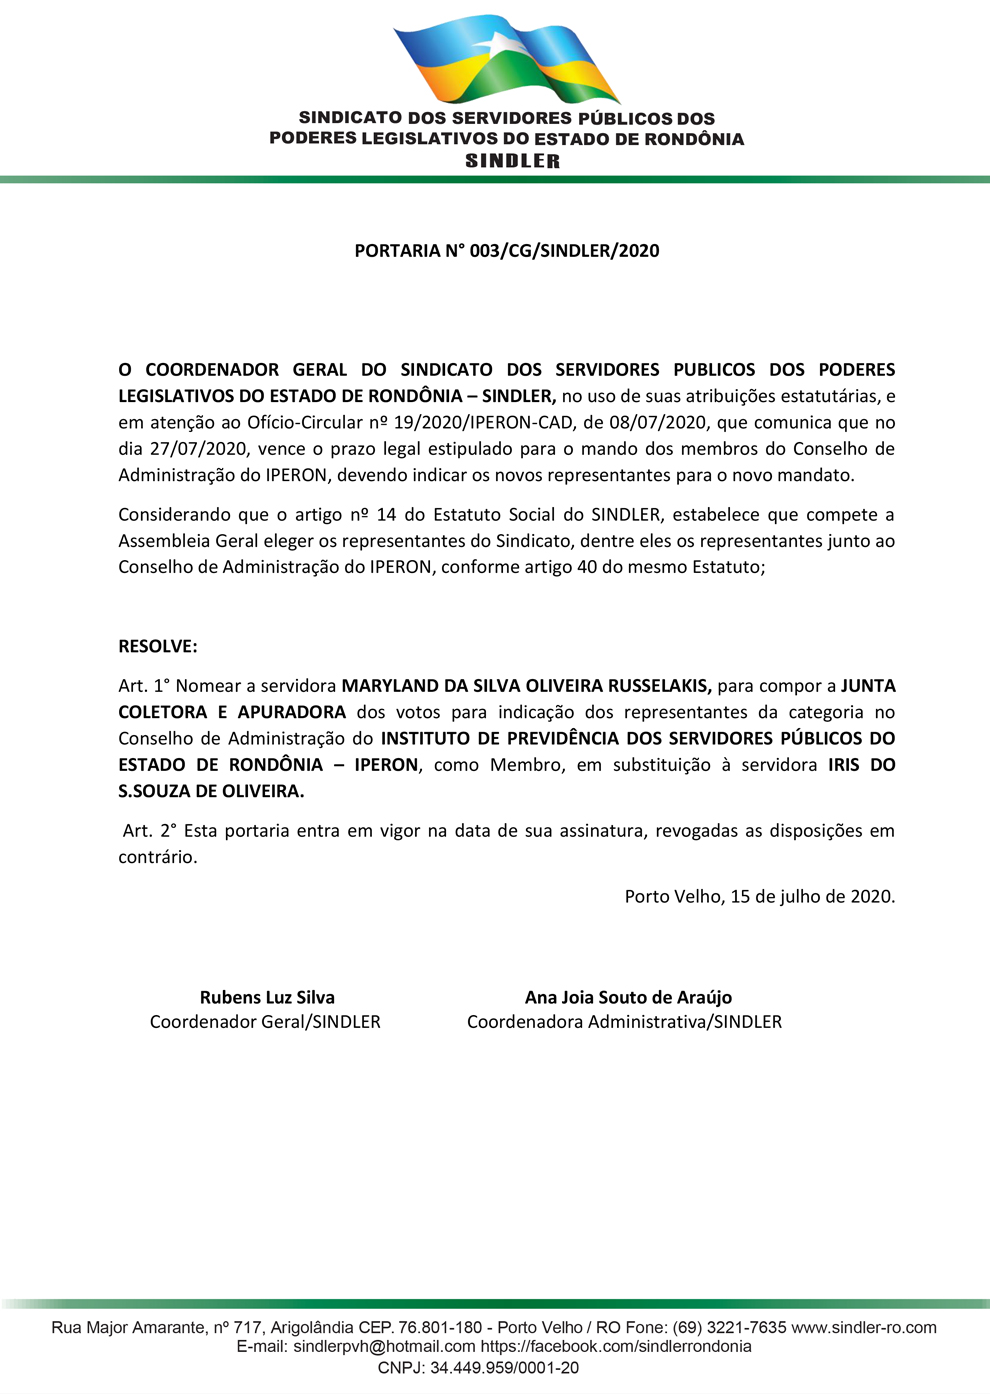 PORTARIA Nº003 SUBSTITUIÇÃO MEMBRO DA COMISSAO ELEITORAL CONSELHO IPERON